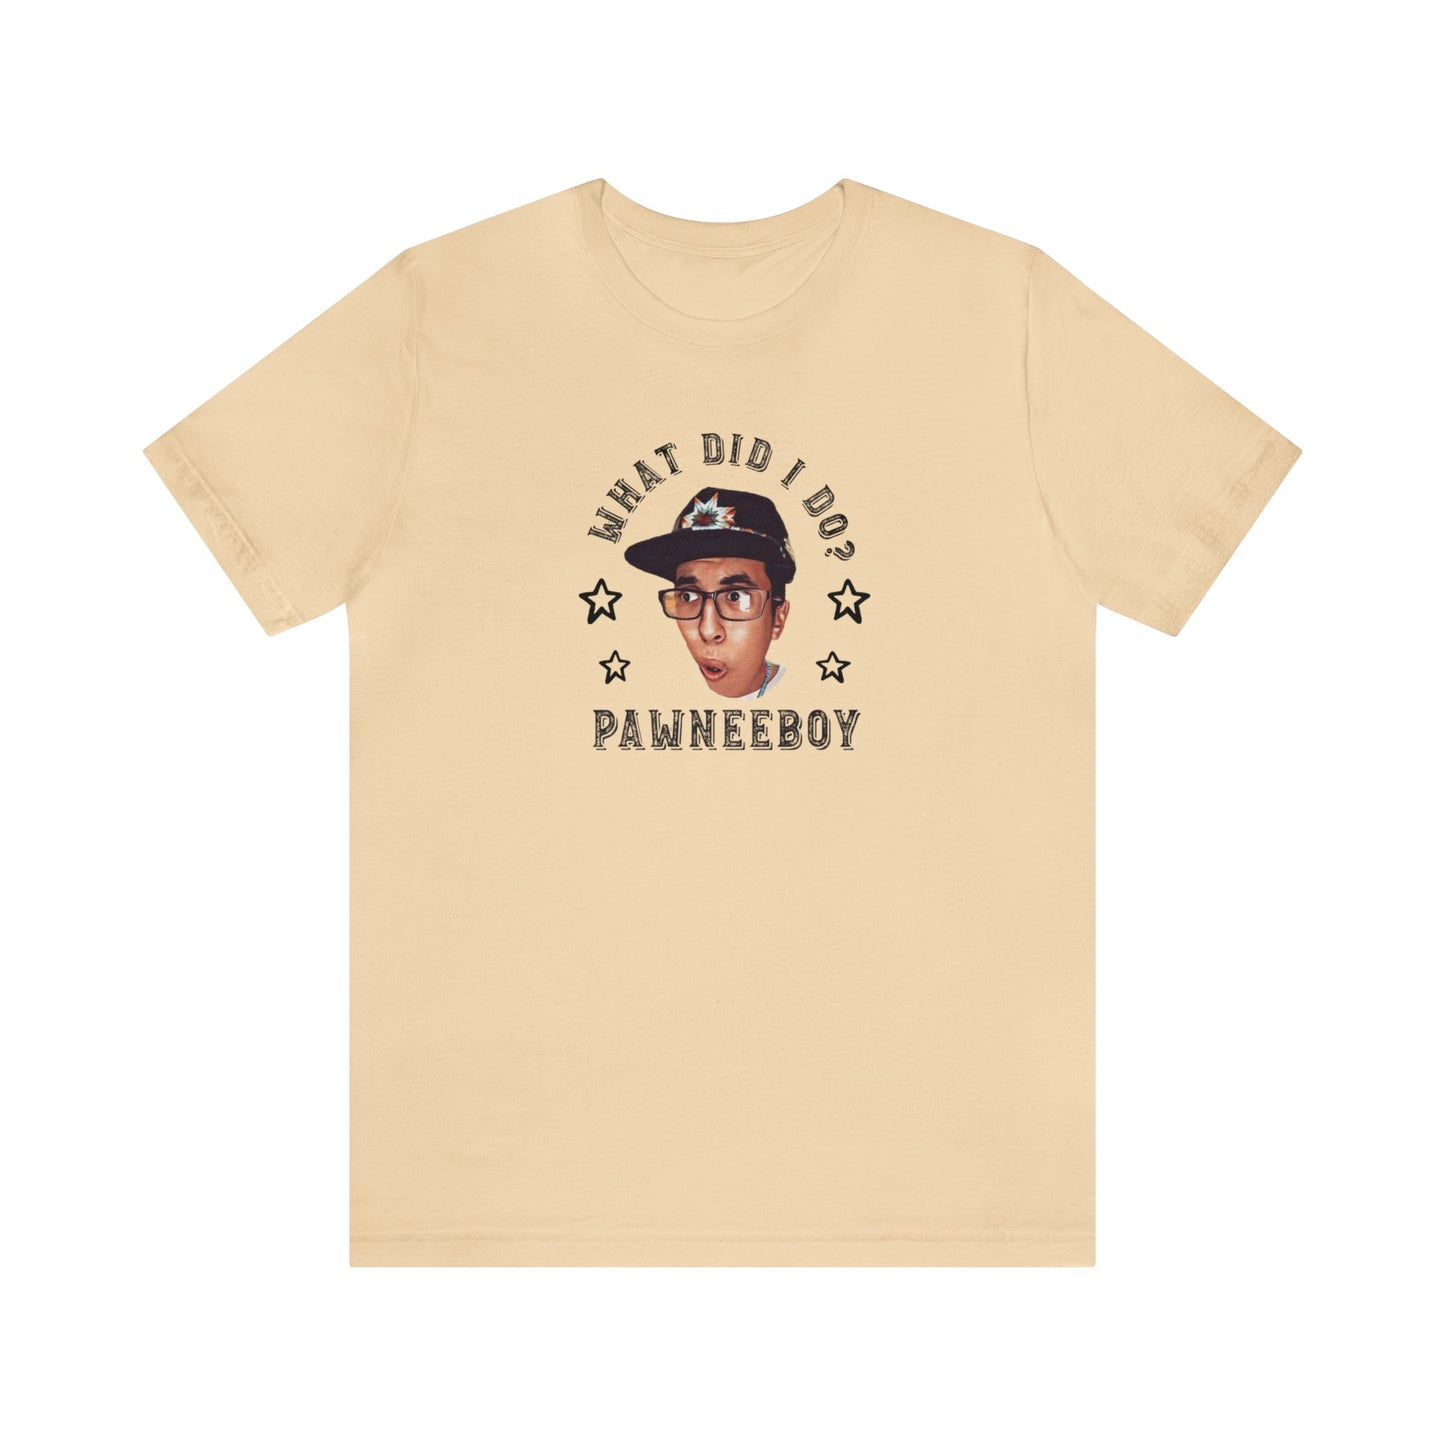 Pawneeboy - ¿Qué hice? Camisa Nativo Americano (Pedido Especial)